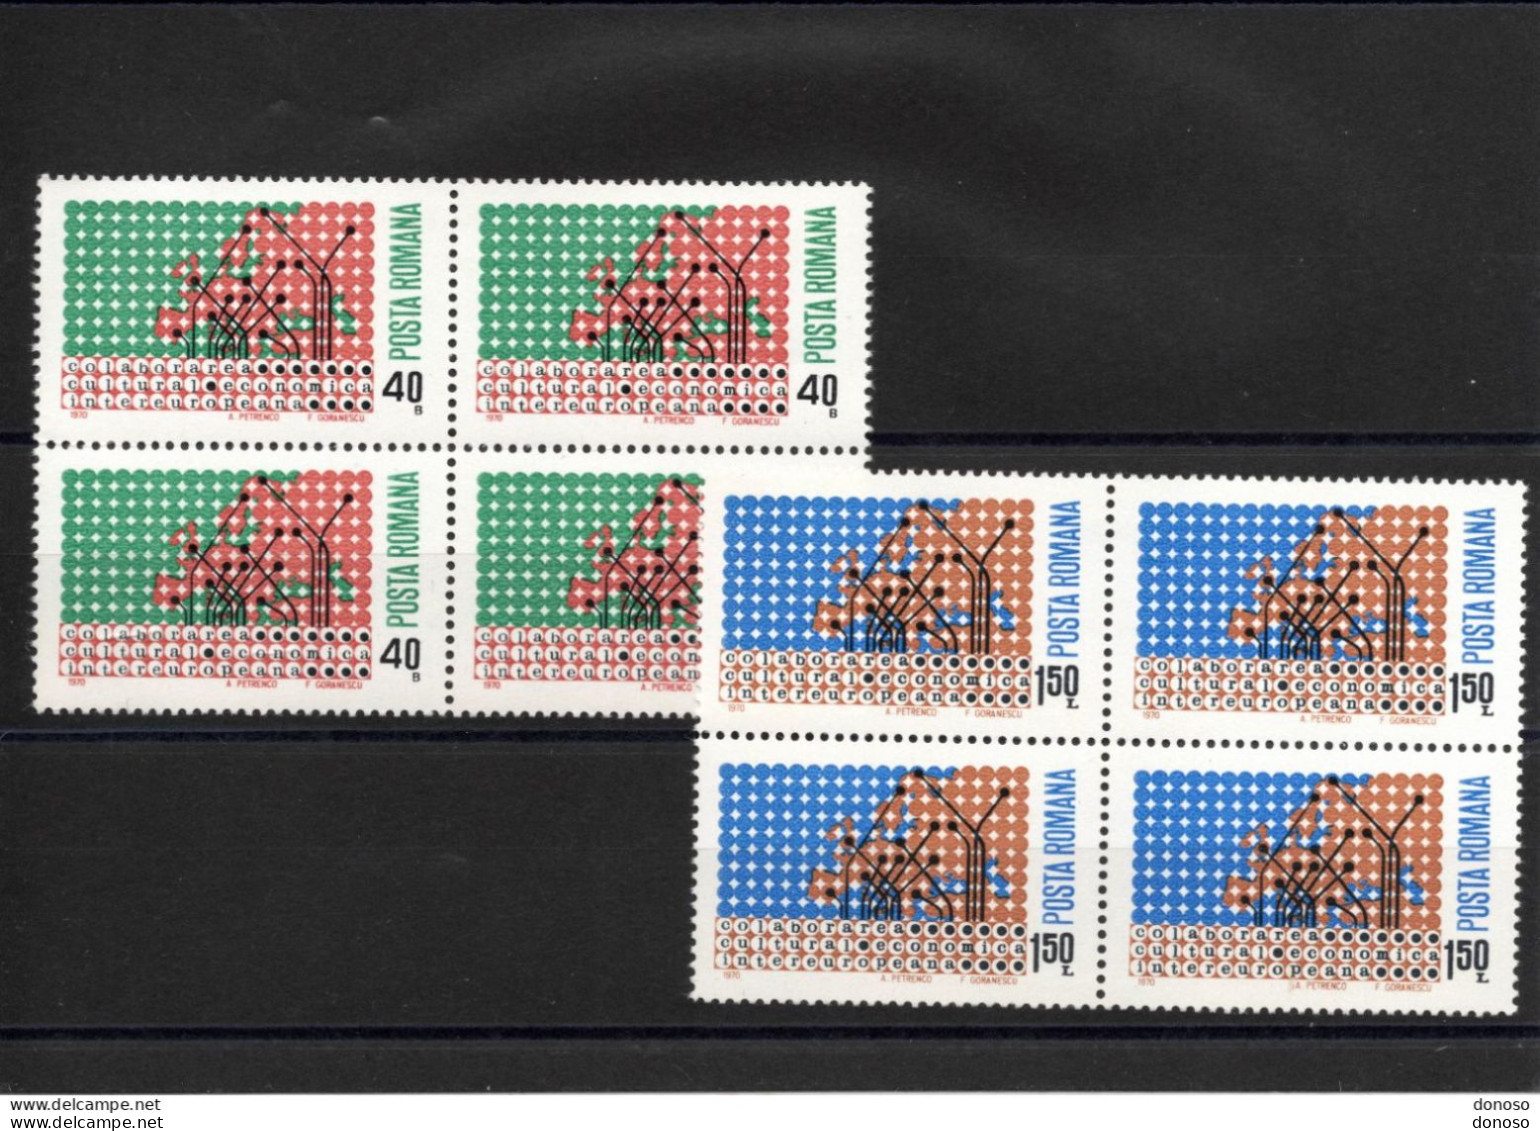 ROUMANIE 1970 Collaboration Culturelle Et économique Européenne Bloc De 4 Yvert 2533-2534 NEUF** MNH - Unused Stamps